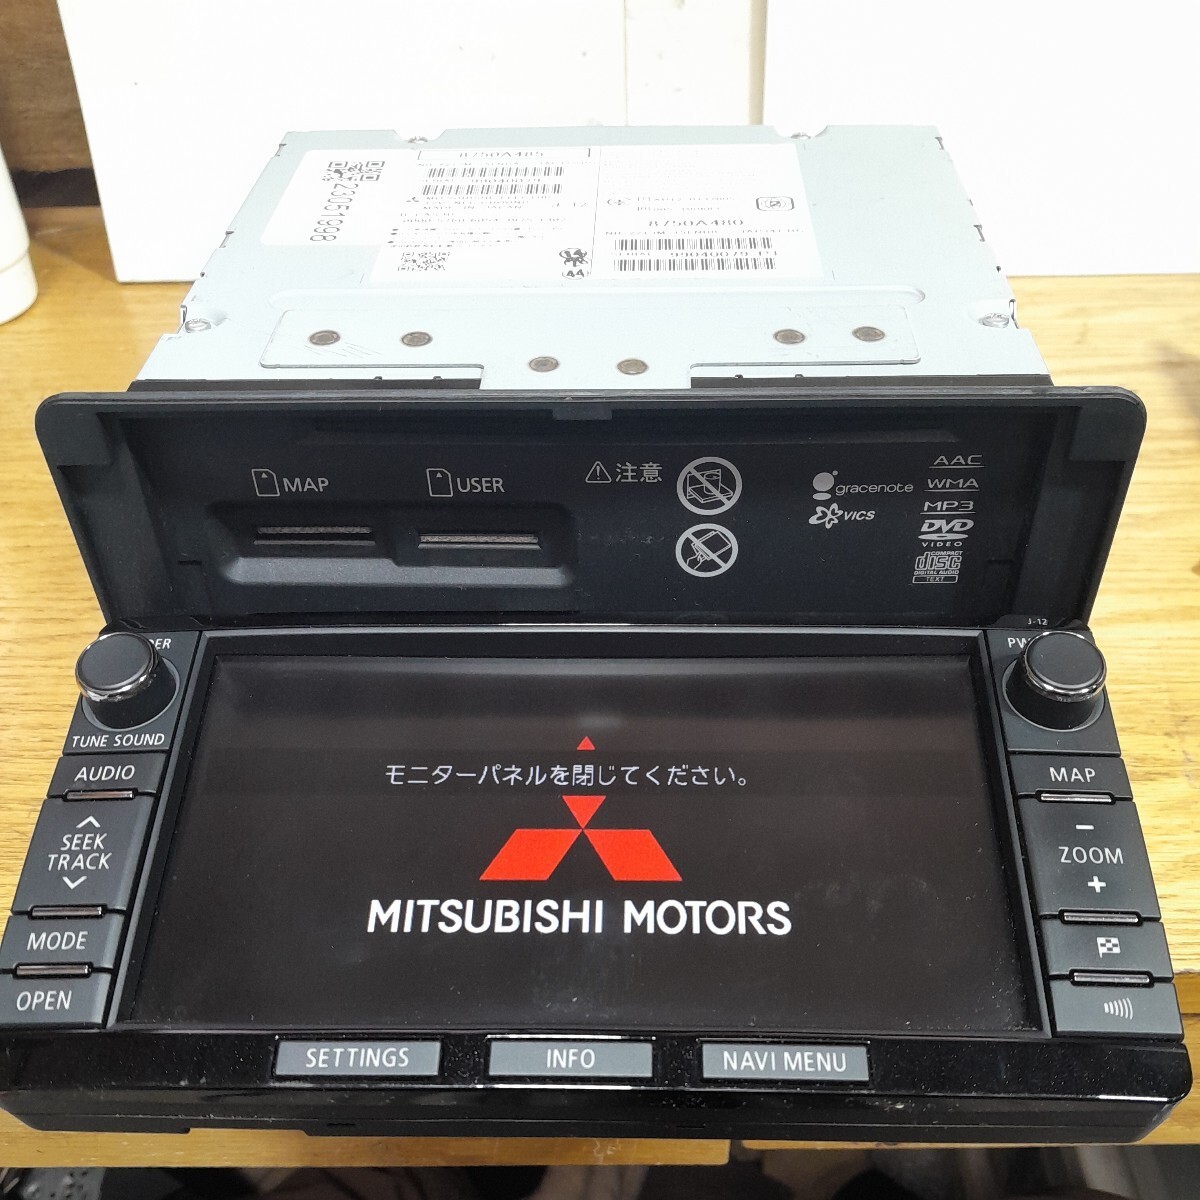  Mitsubishi оригинальная навигация J-12( контрольный номер :23051998) карта данные SD карта отсутствует 